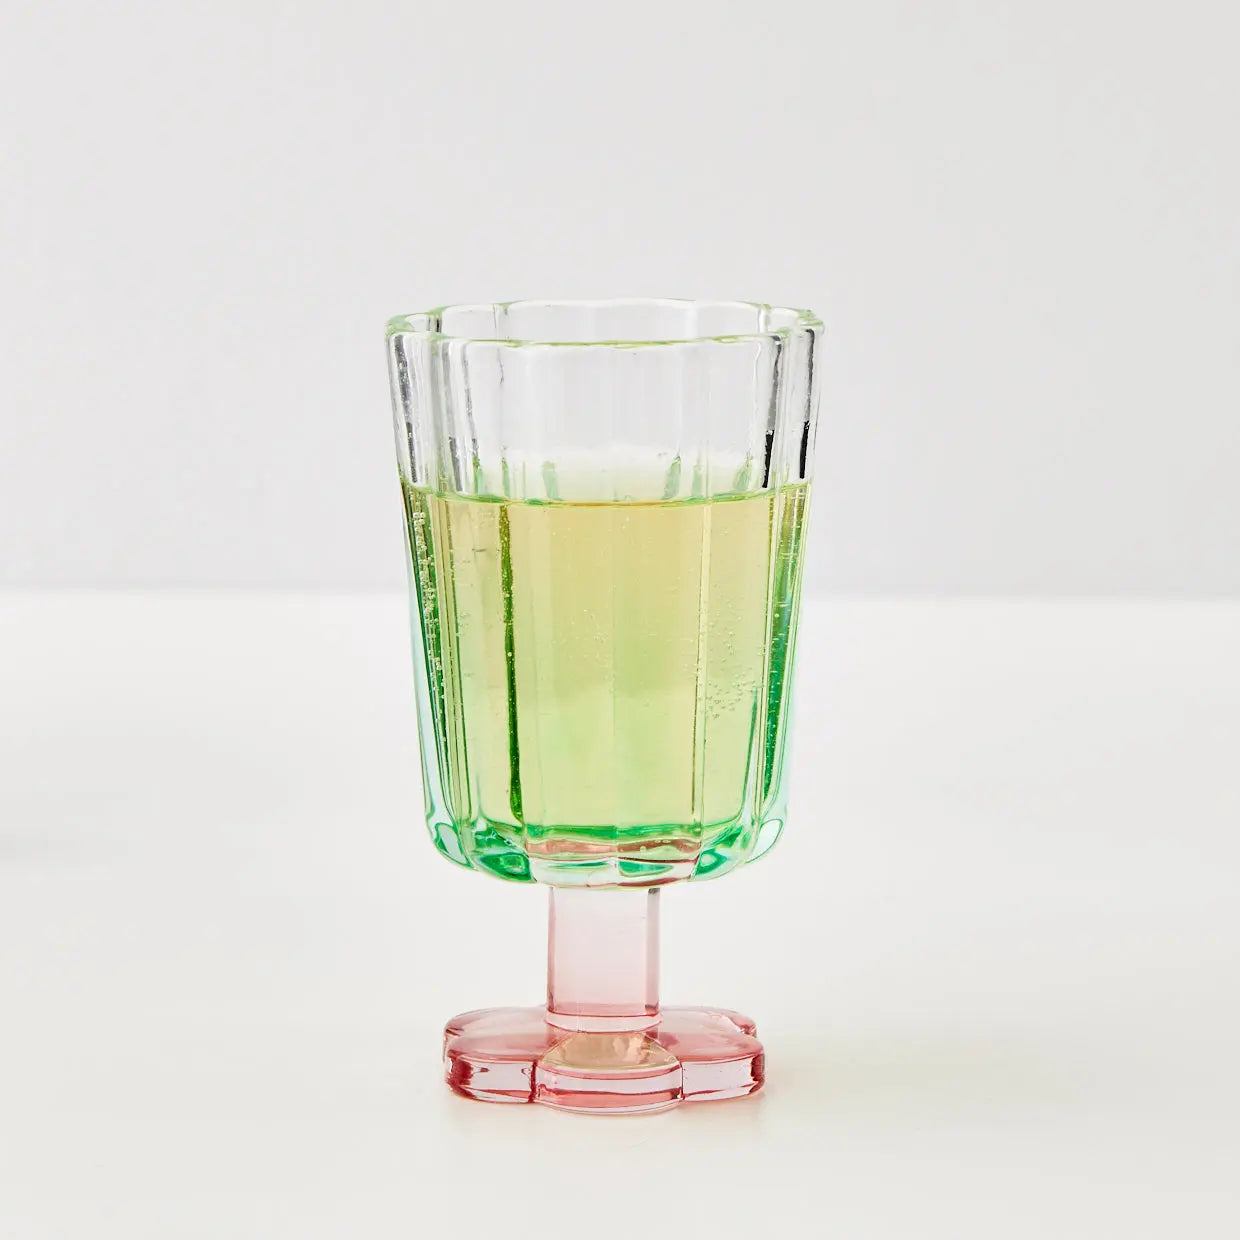 Posie Ribbed Wine Glass Green - GigiandTom